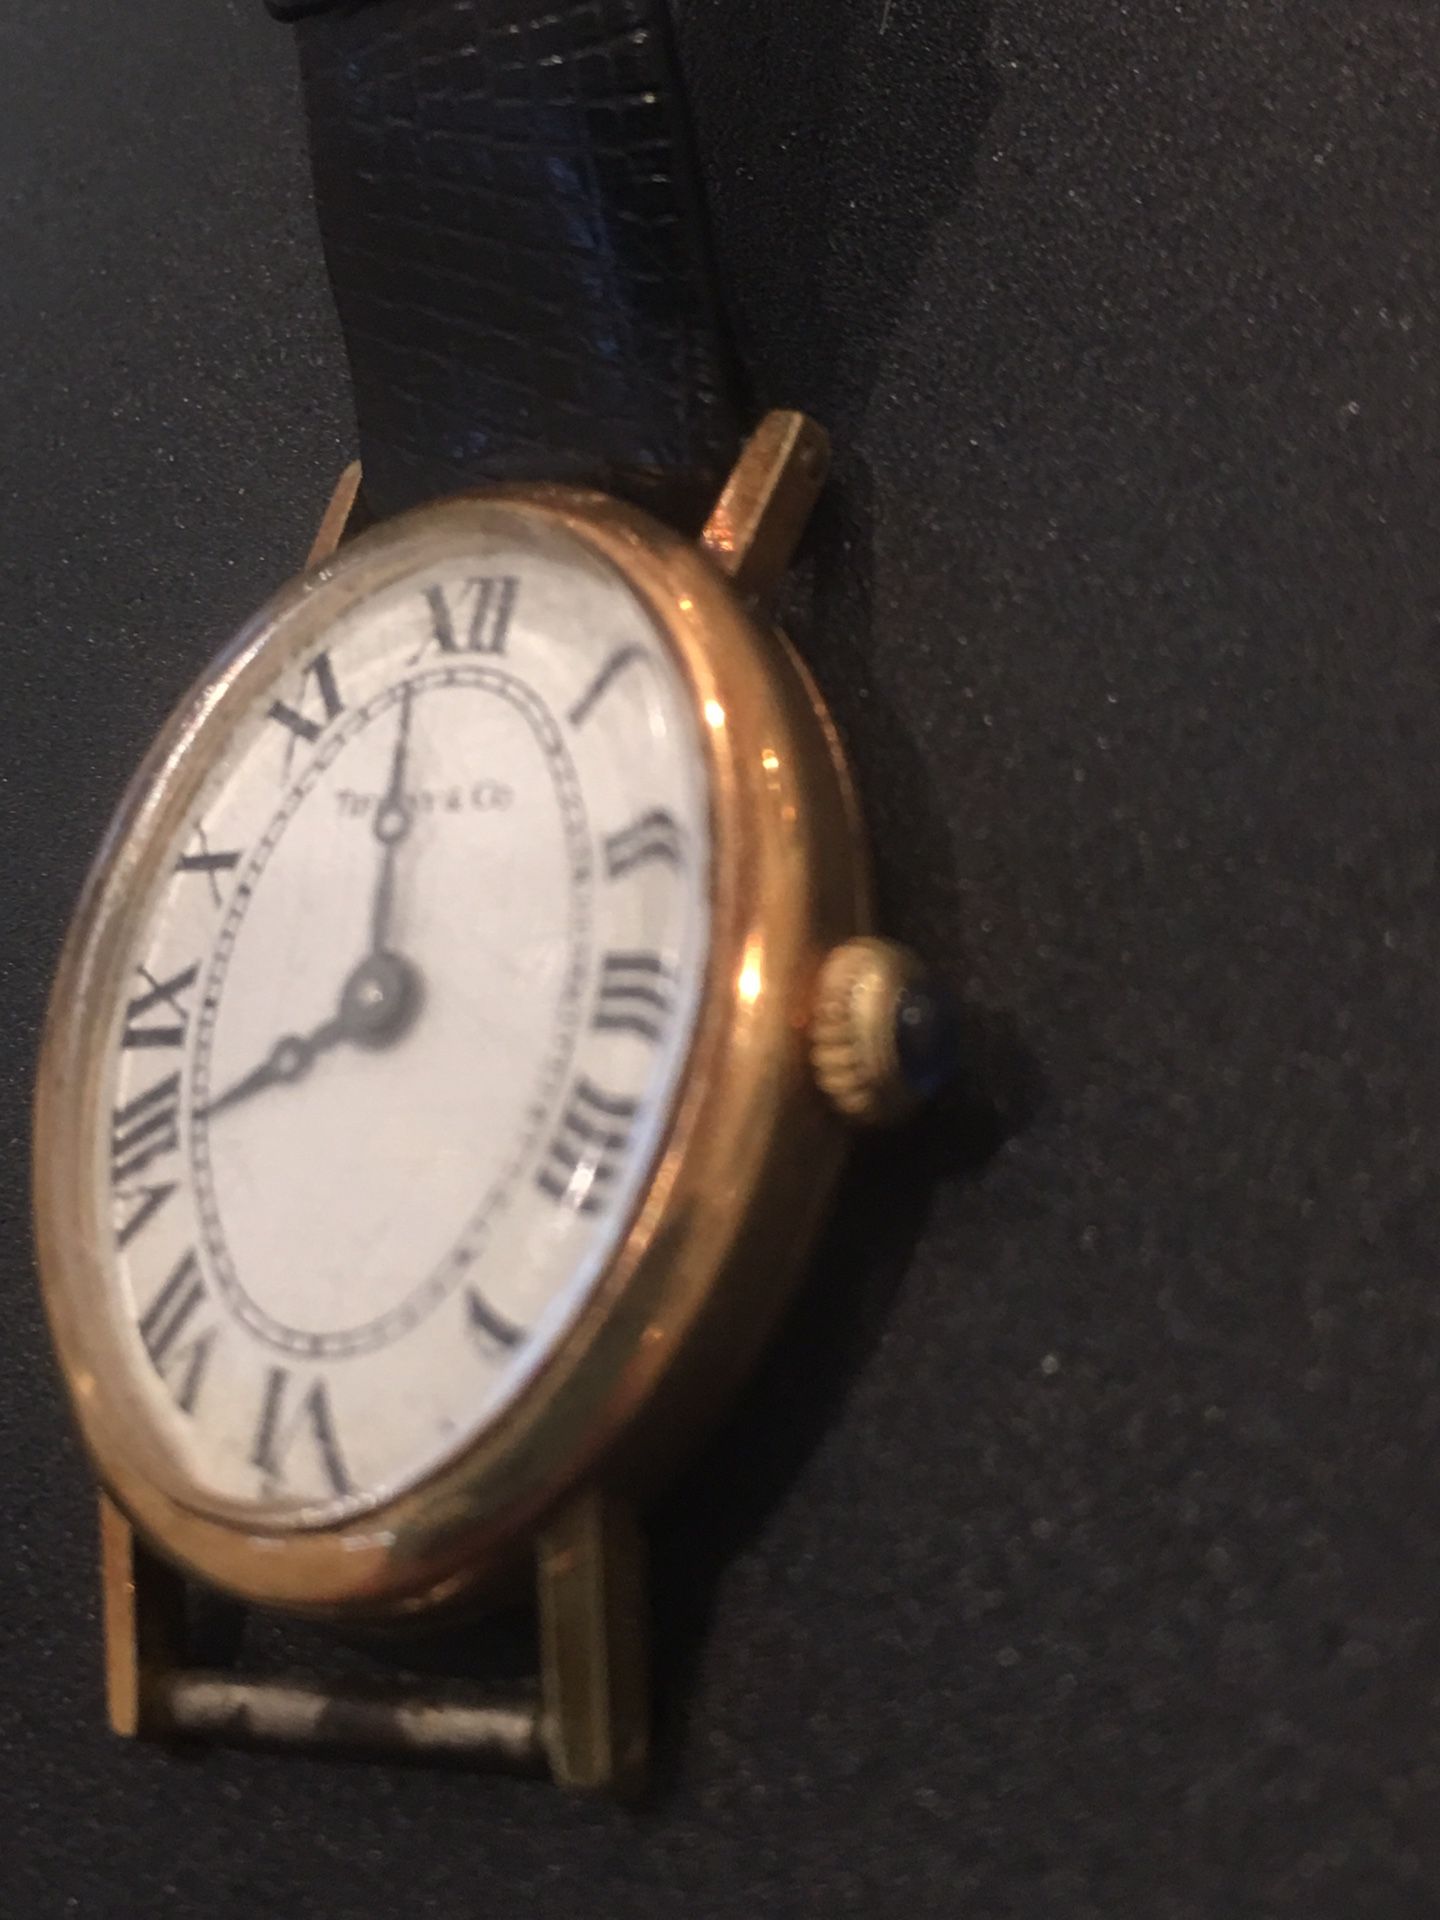 Tiffany woman’s watch in 14 karat gold